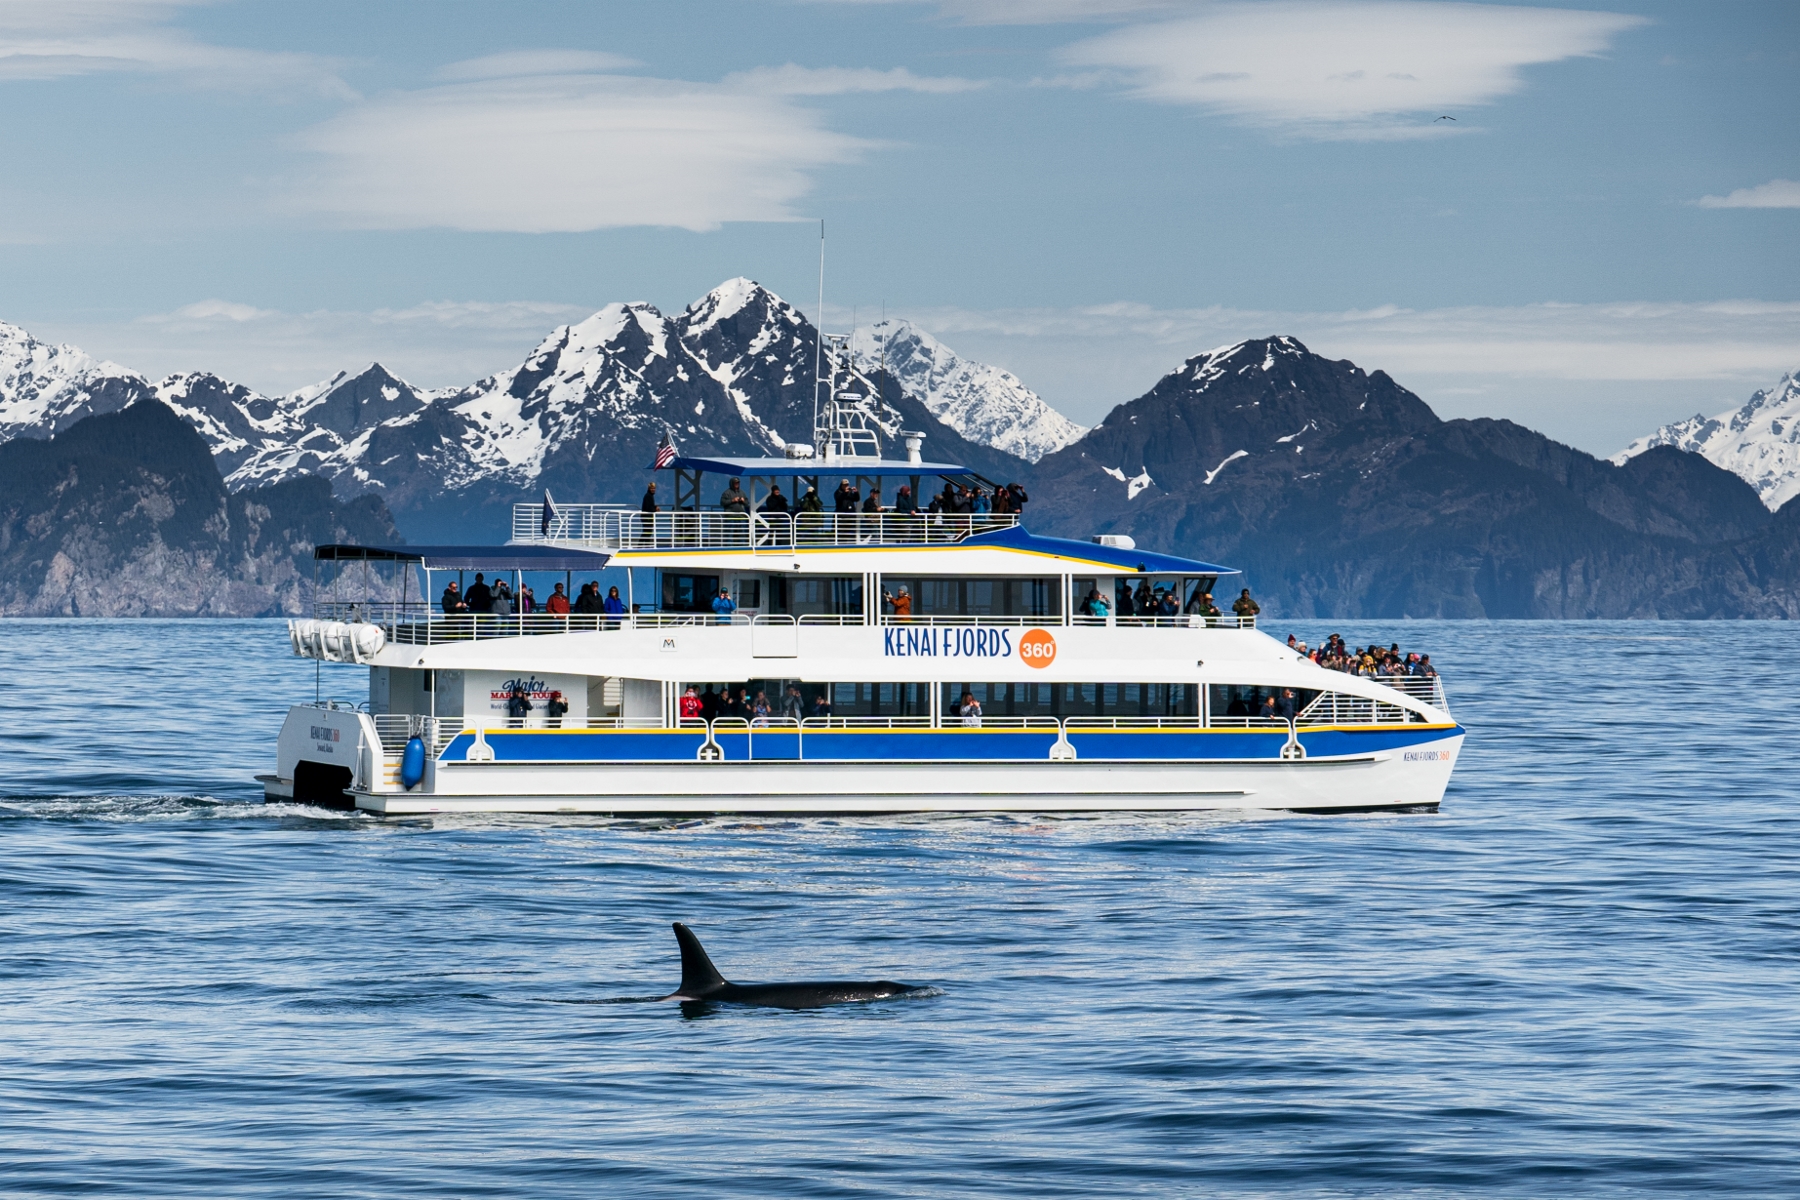 Kenai Fjords 360 and orca